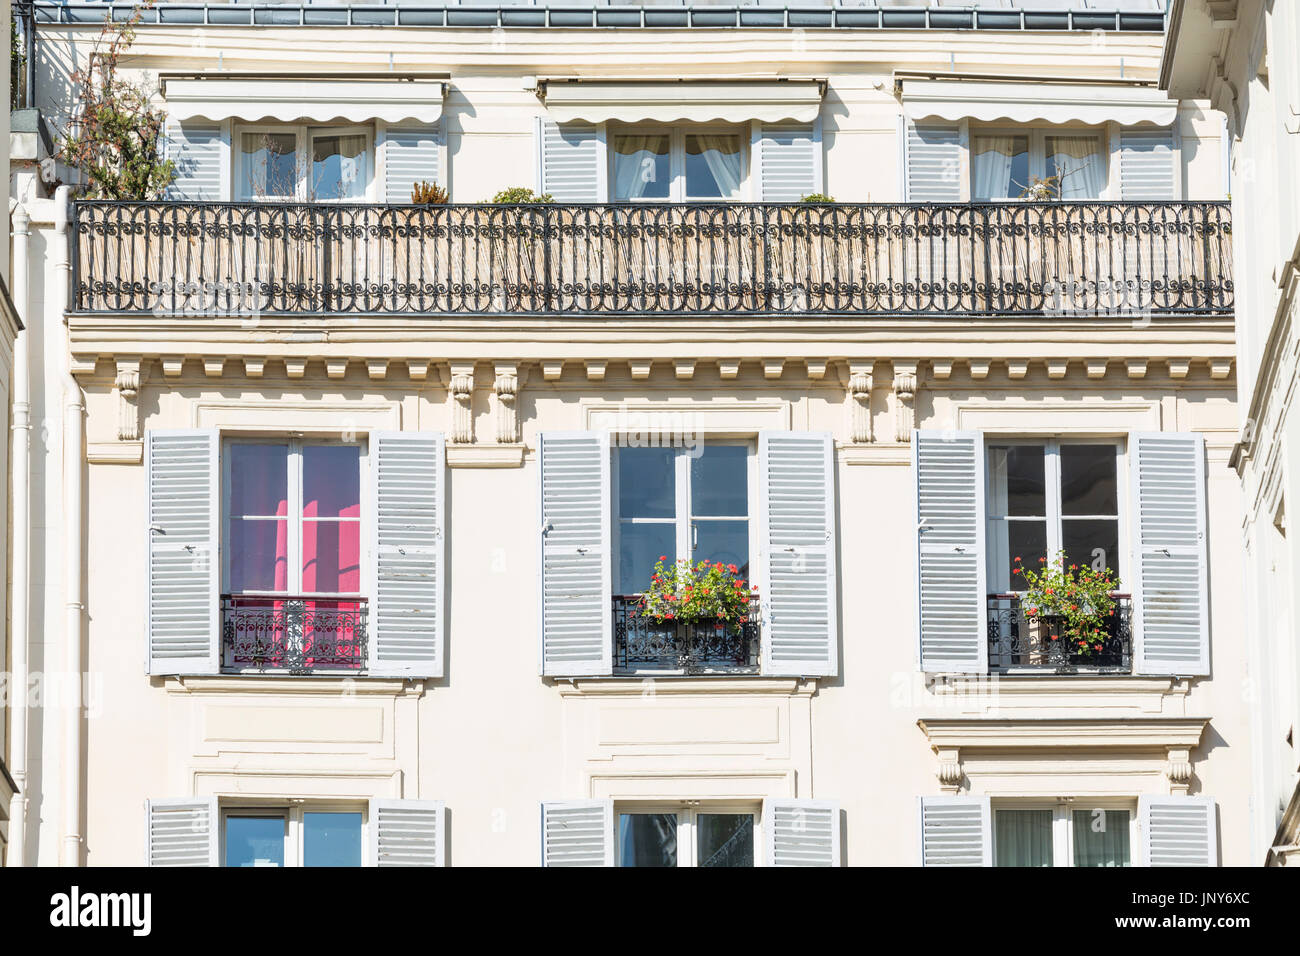 Paris, Frankreich - 29. Februar 2016: Typischen Haussmann-Apartment Gebäude-Fassade mit Rollläden, Vorhänge, Balkone, Markisen und Balkonkästen, Paris, Frankreich. Stockfoto